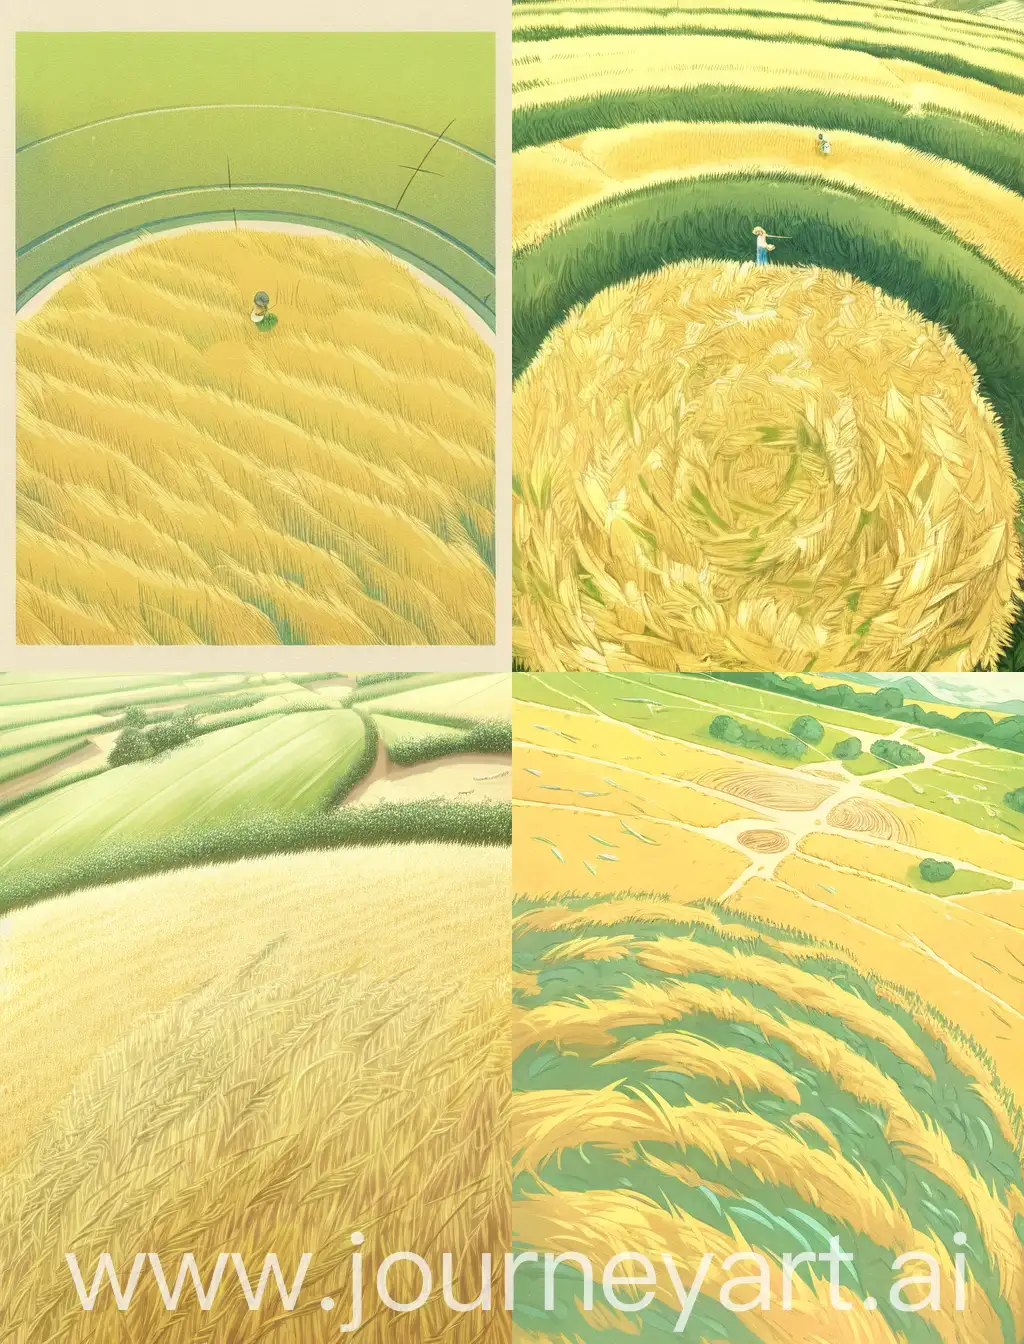 在田野上，农民, 农业, 麦田圈, 手绘插画，俯视图，黄绿色调，丰富细腻的细节，超清晰8K，基于Hiromu Arakawa